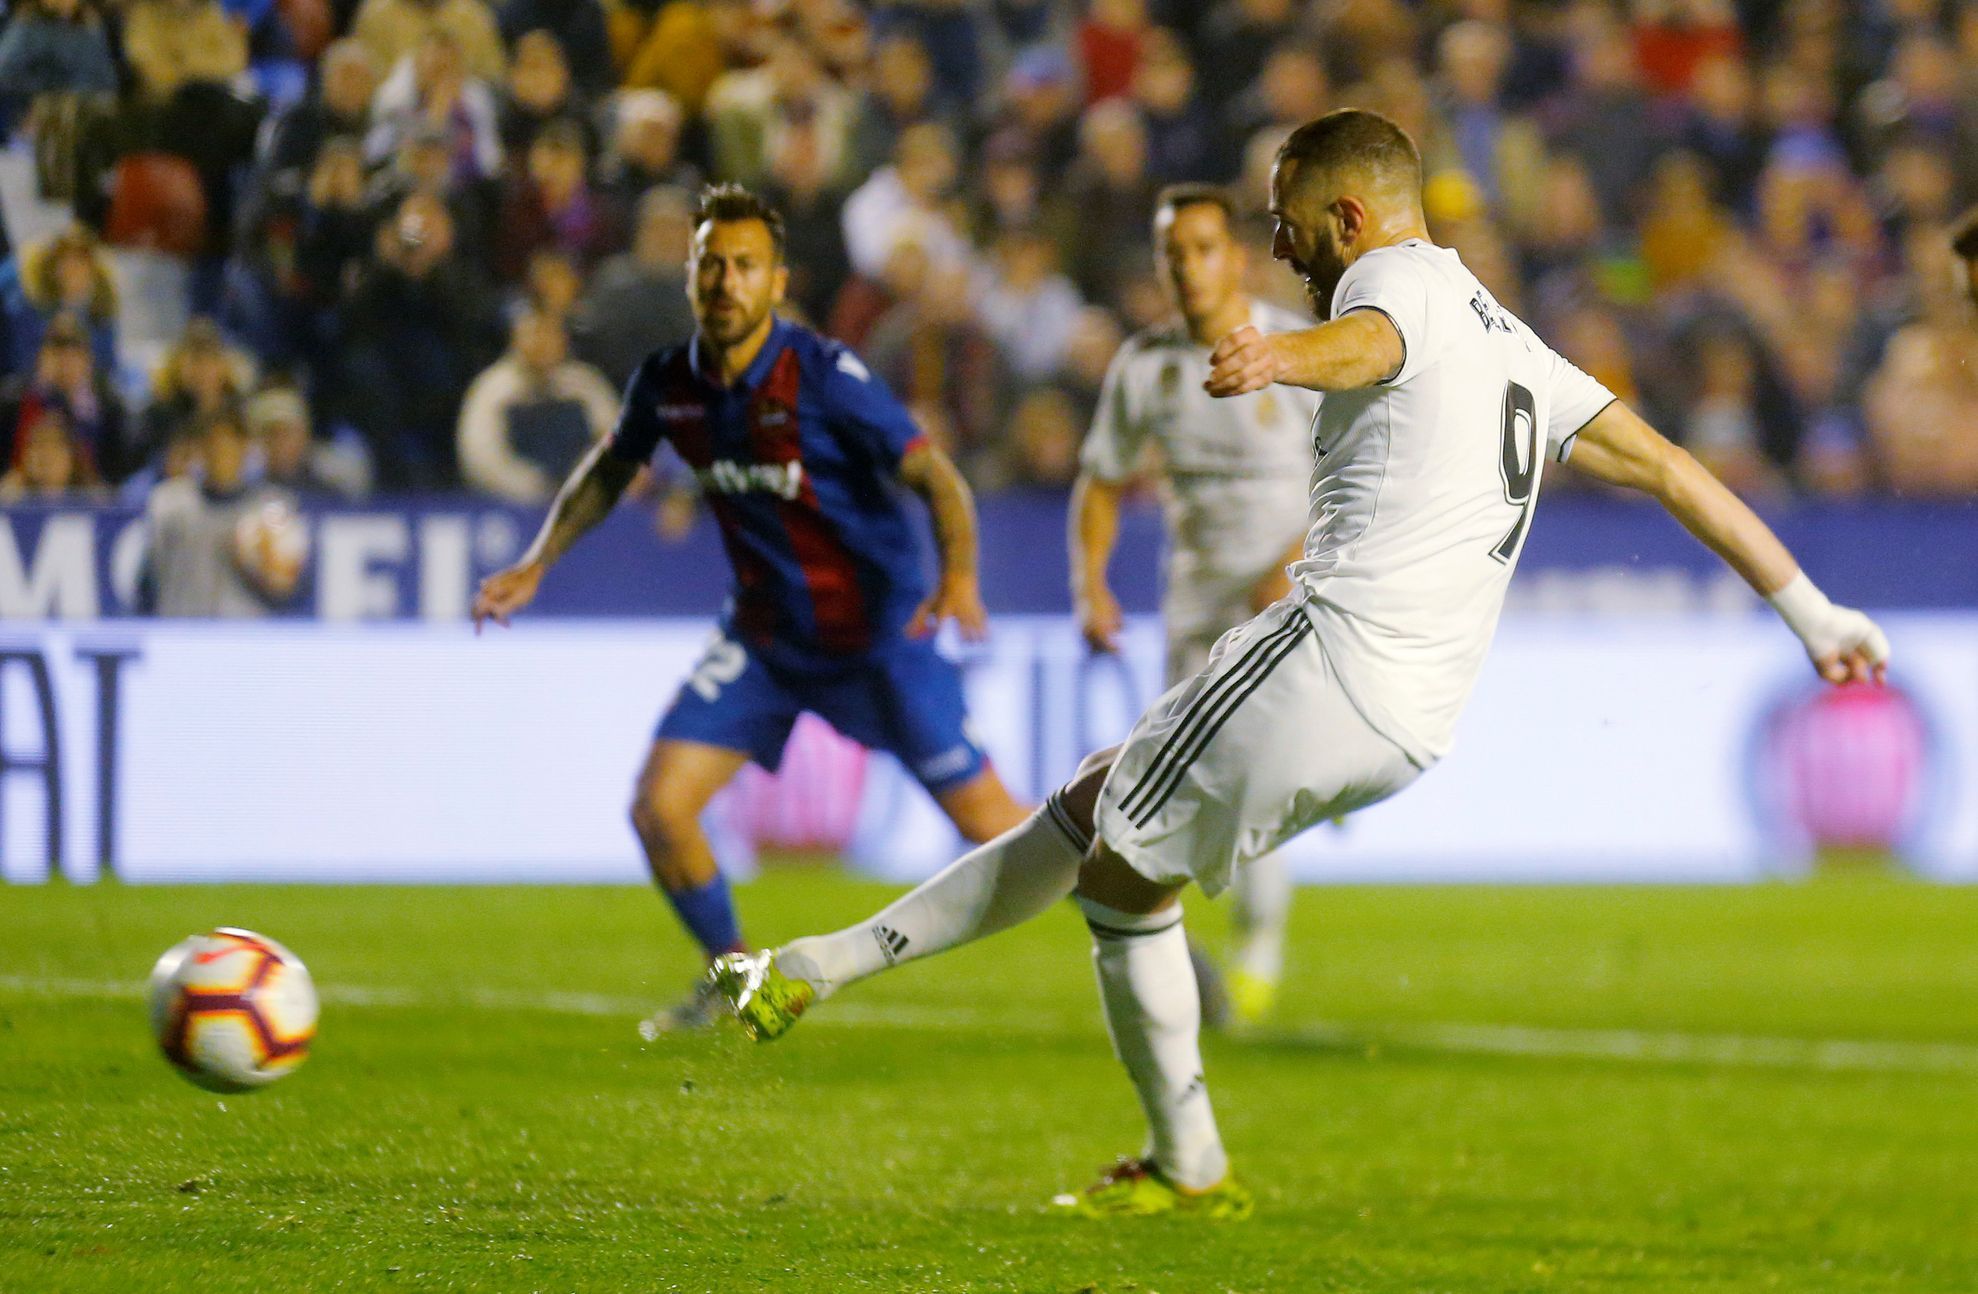 Španělská fotbalová liga 2018/19, Levante - Real Madrid: Karim Benzema proměňuje penaltu.